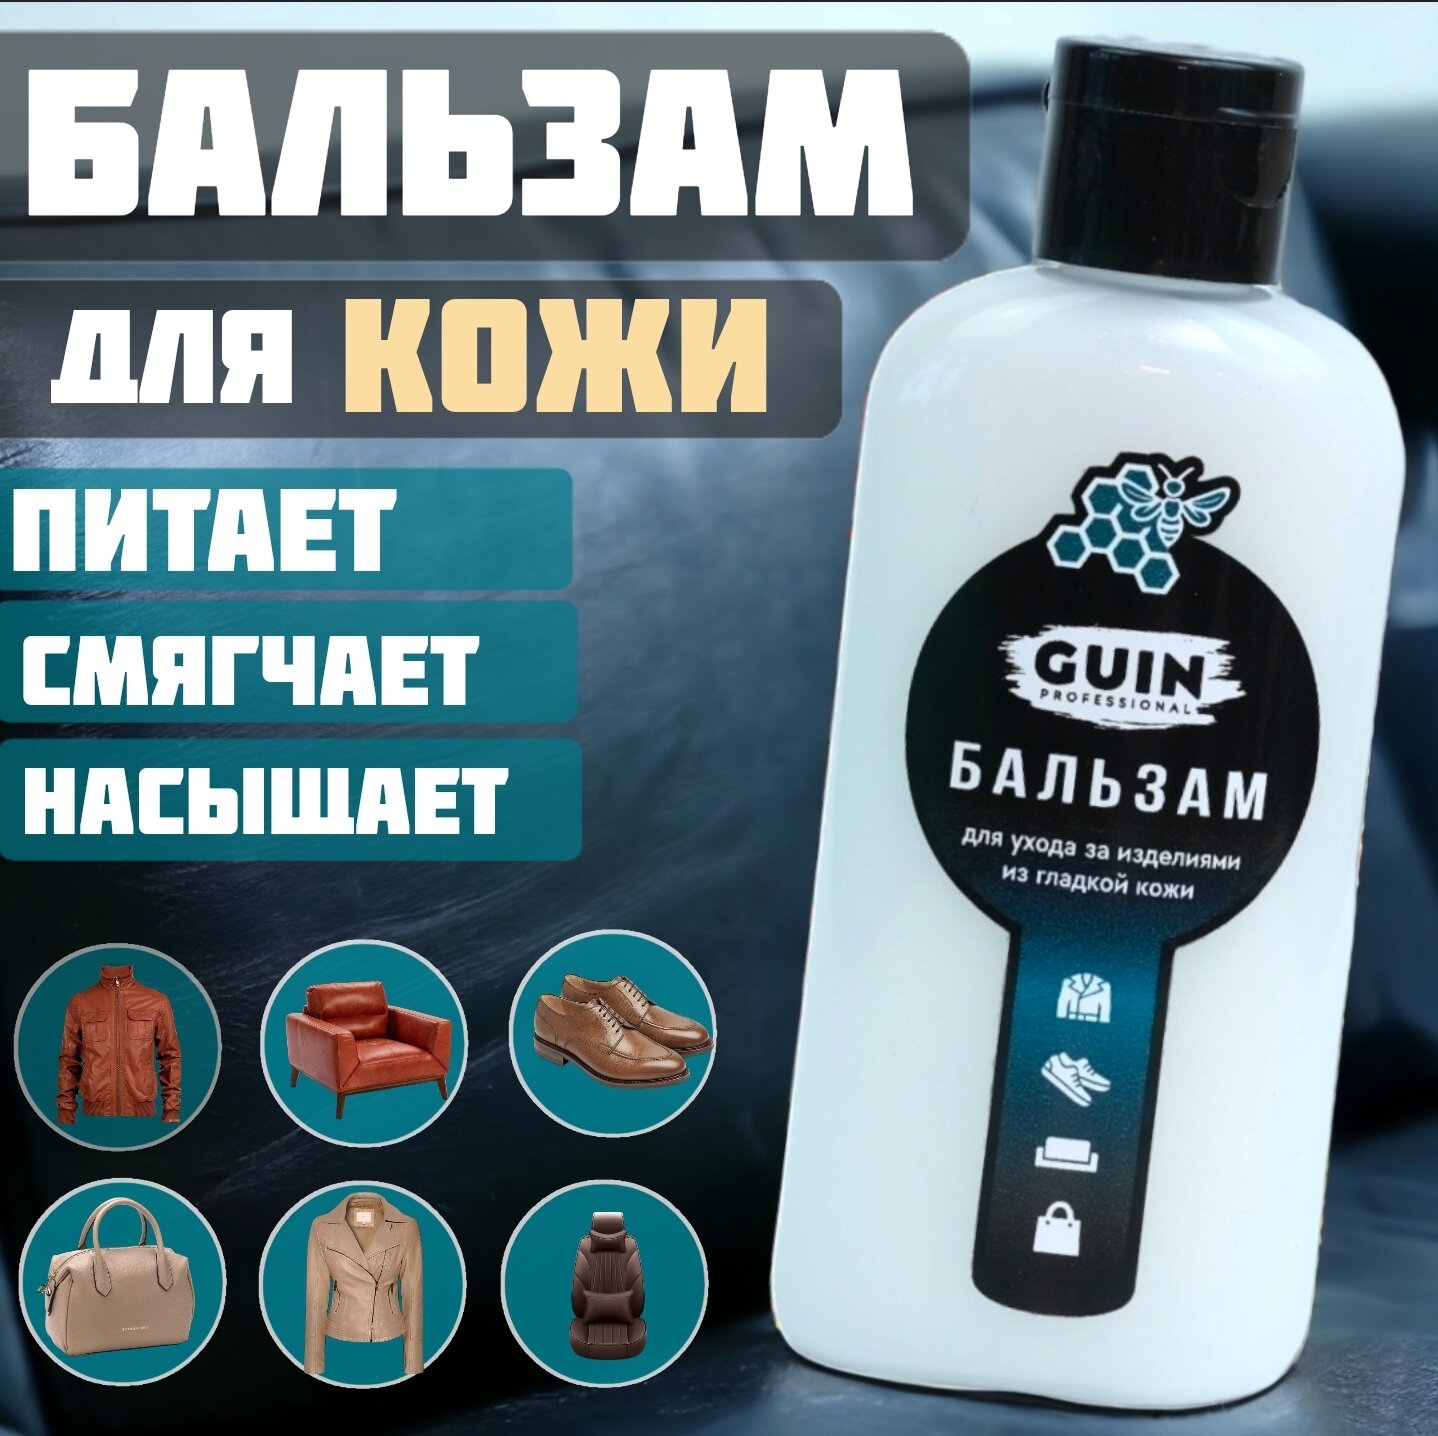 Лосьон смягчитель GUIN 100 МЛ для изделий из гладкой кожи восстановитель для одежды обуви курток сумок бальзам пропитка